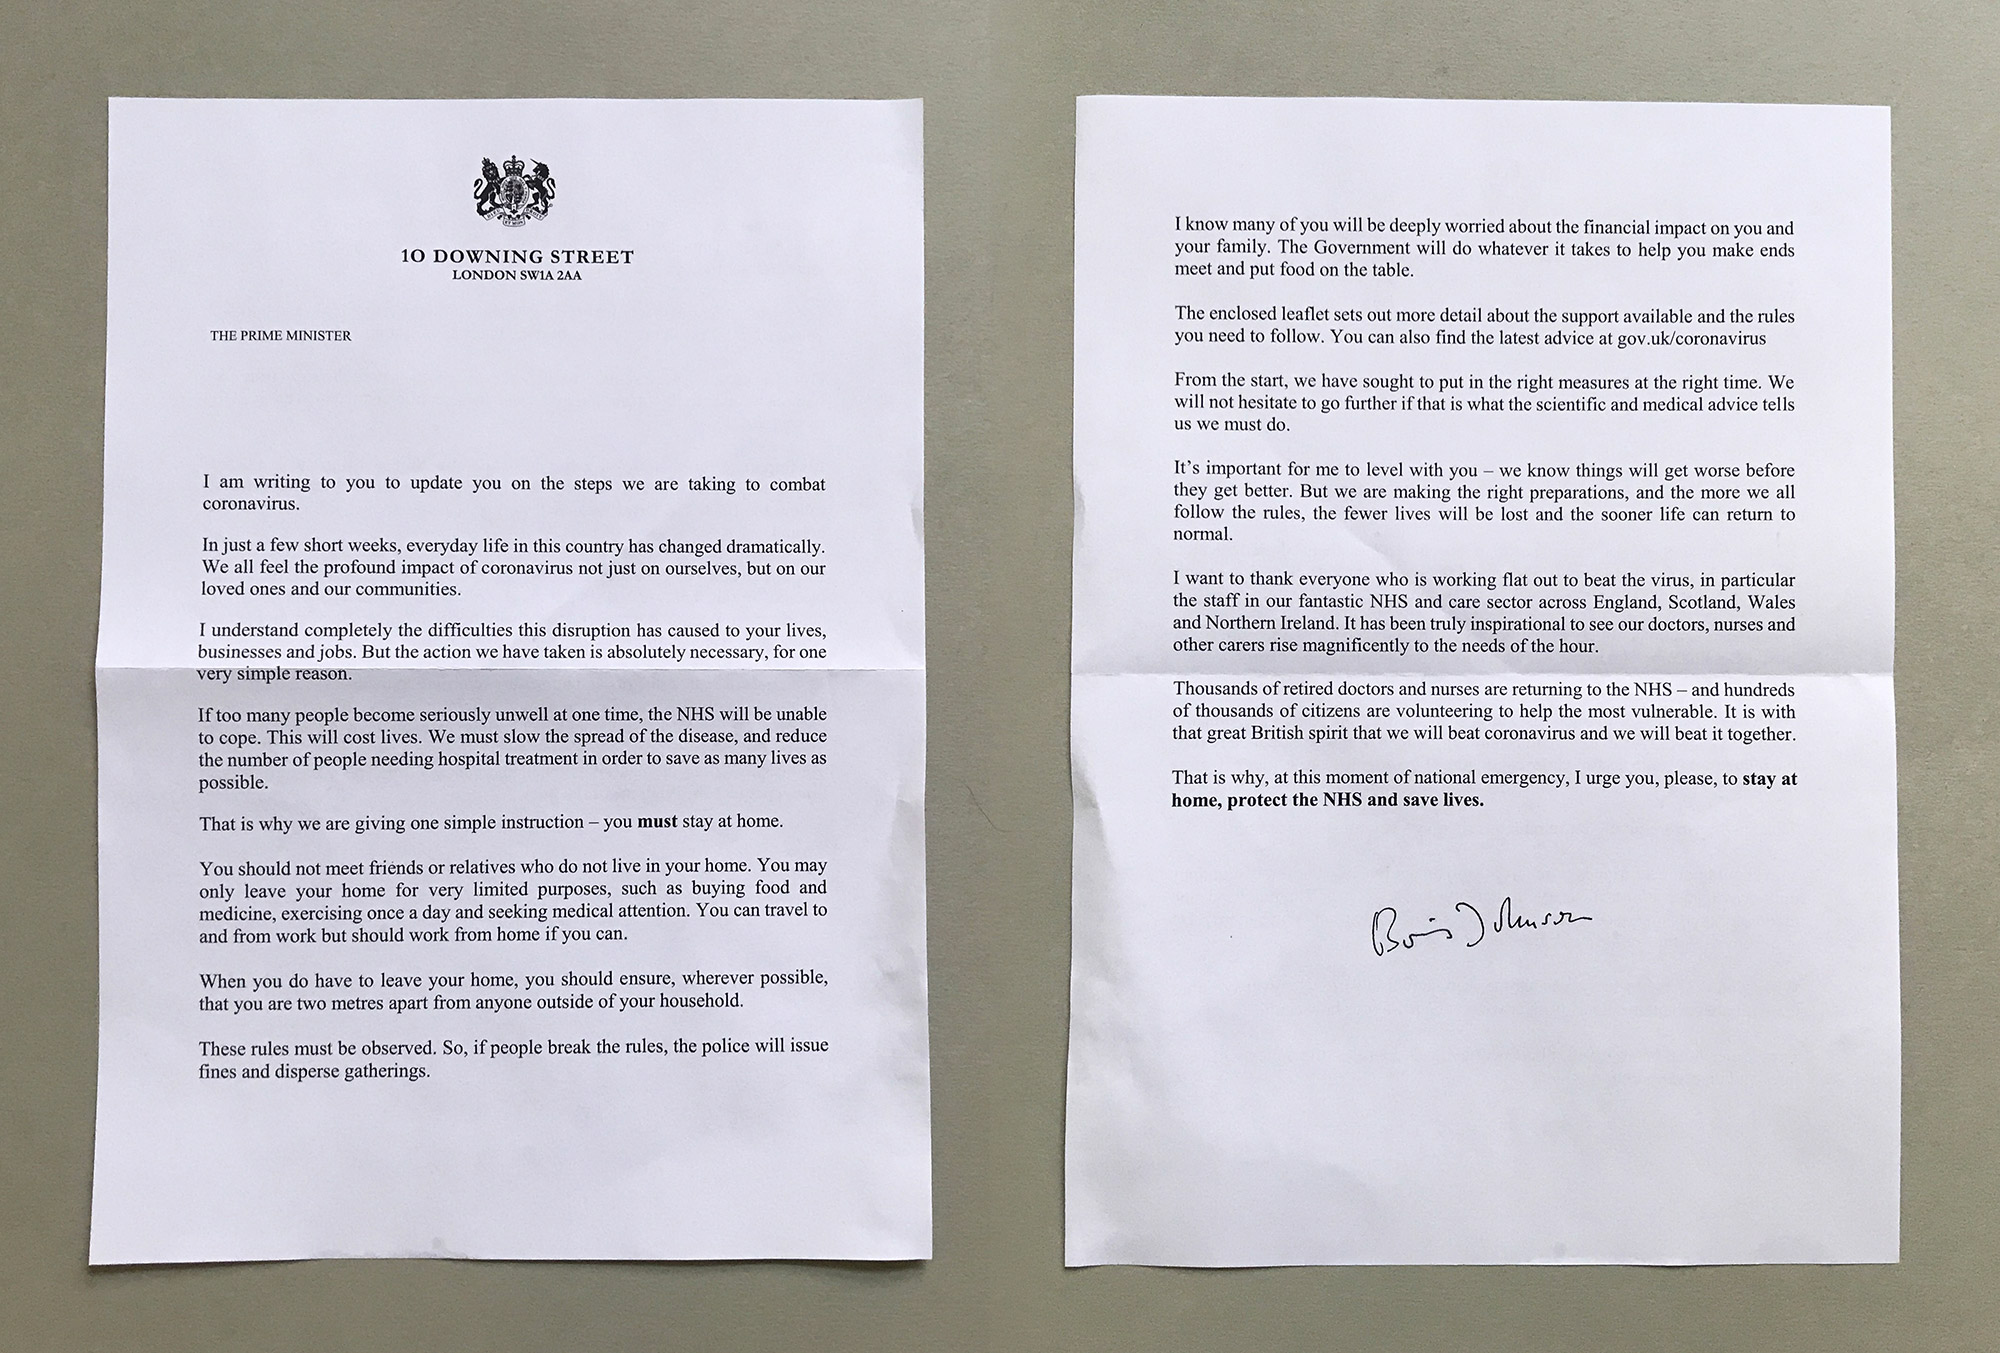 ボリス・ジョンソン首相からの手紙